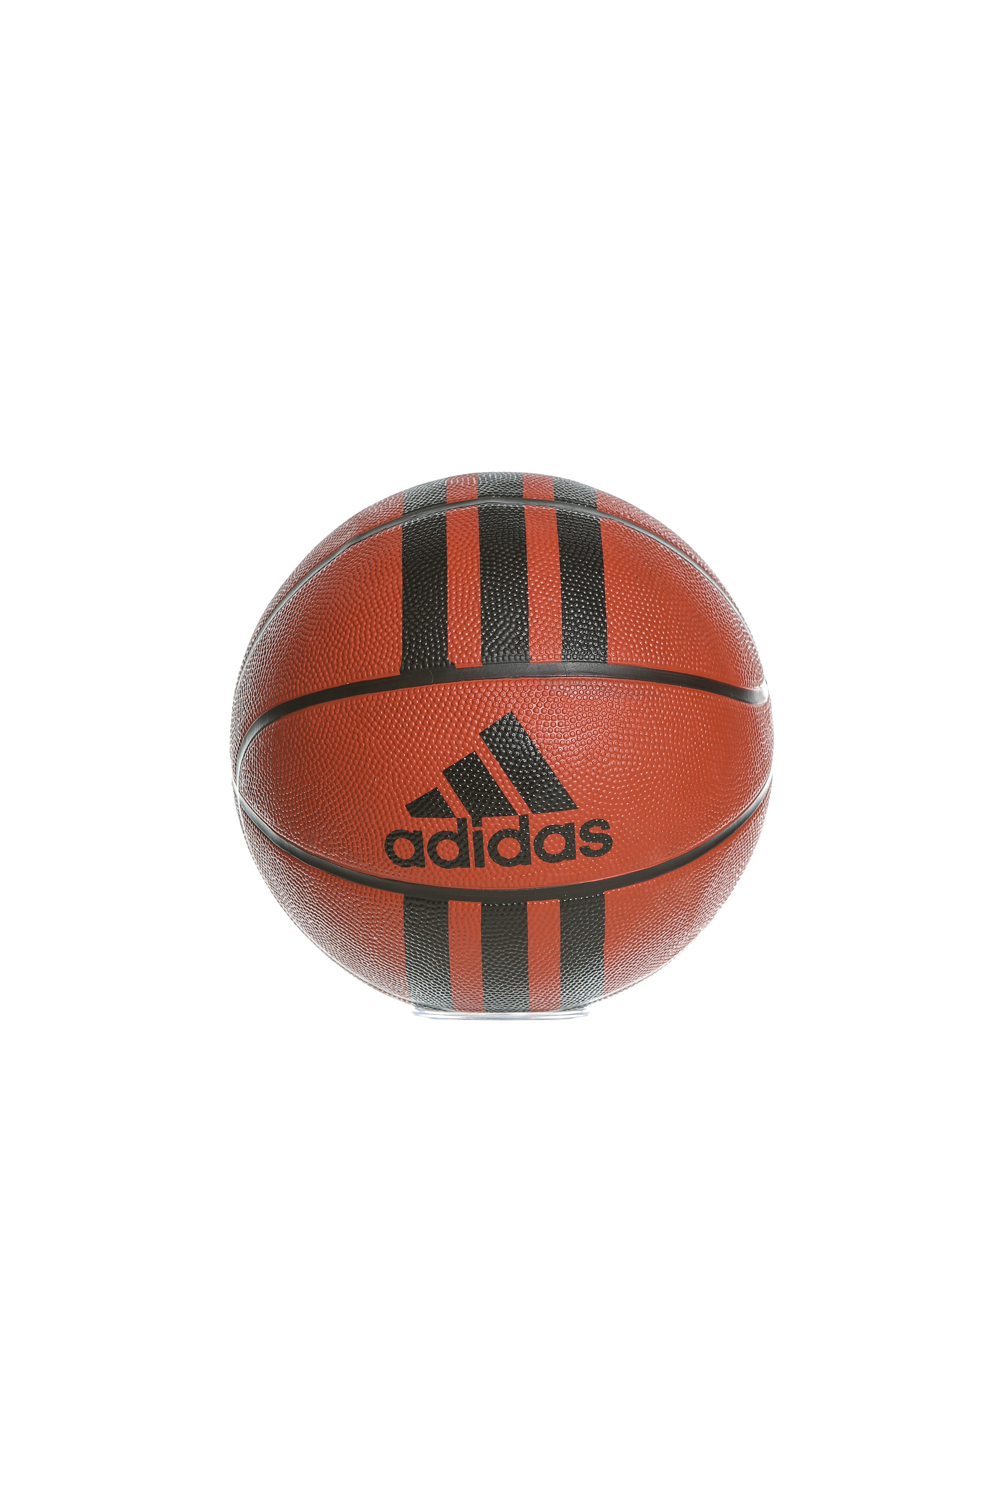 adidas Performance - Μπάλα μπάσκετ για παιδιά adidas STRIPE D 29.5 Παιδικά/Boys/Αξεσουάρ/Αθλητικά Είδη